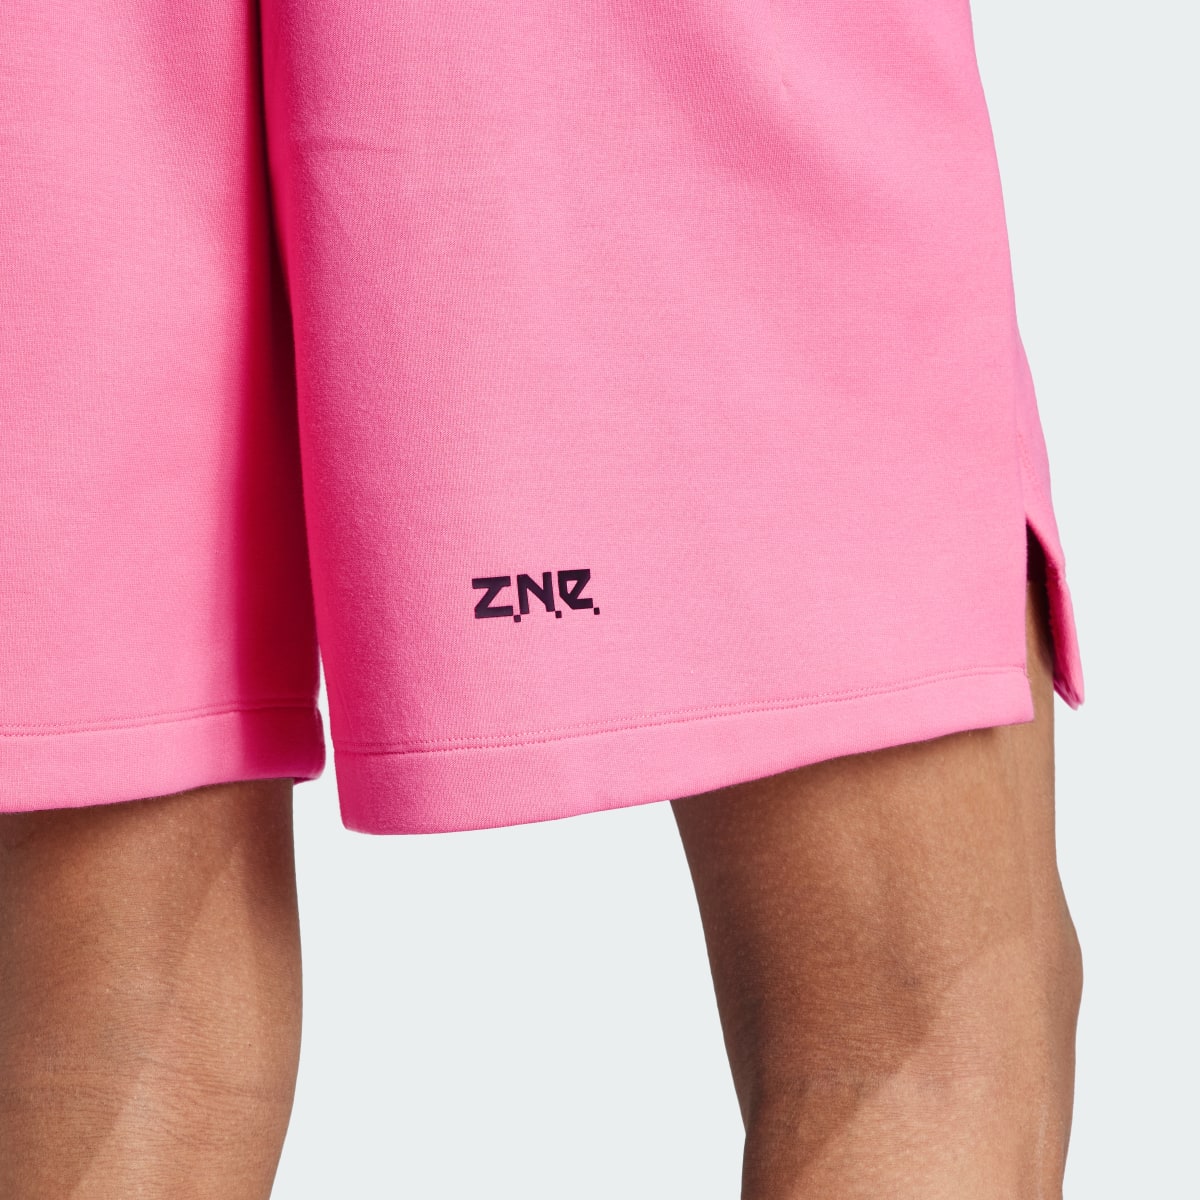 Adidas Z.N.E. Premium Shorts. 5